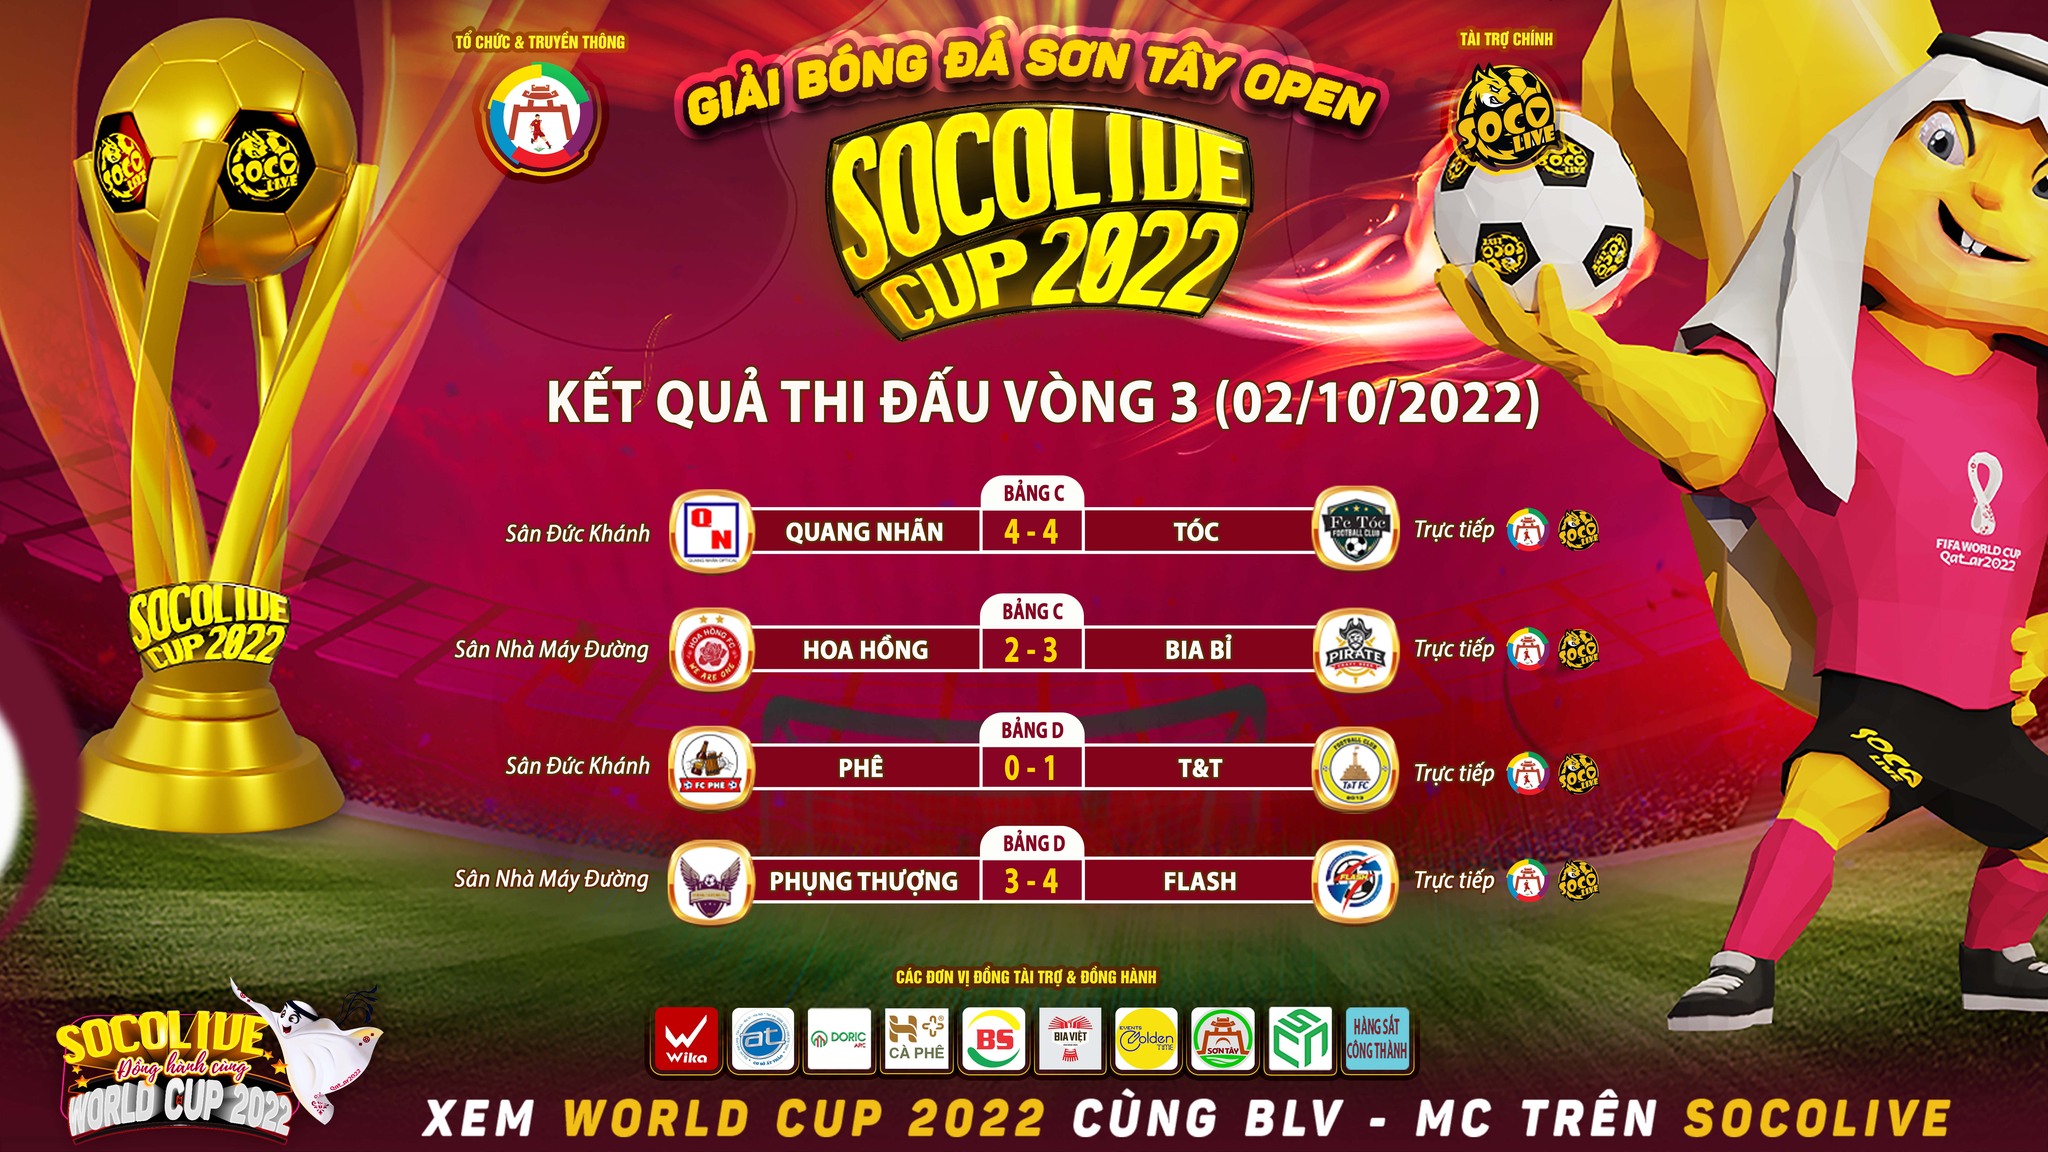 Kết quả thi đấu vòng 3 Bảng C D Giải Bóng Đá Sân 7 Sơn Tây Open Socolive Cup 